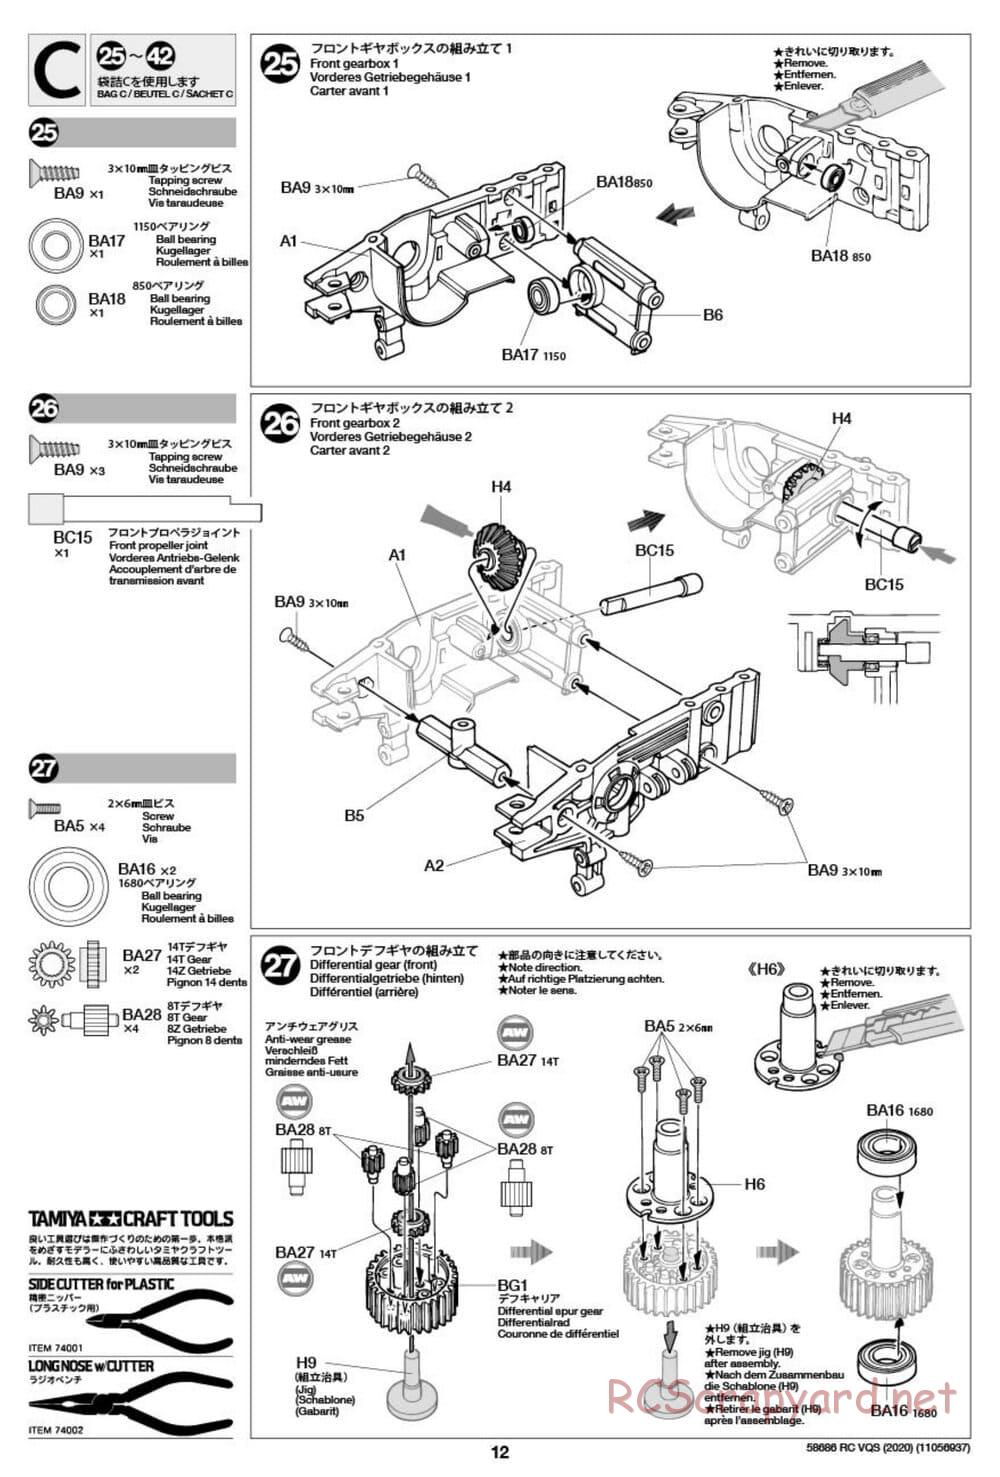 Tamiya - VQS (2020) - AV Chassis - Manual - Page 12